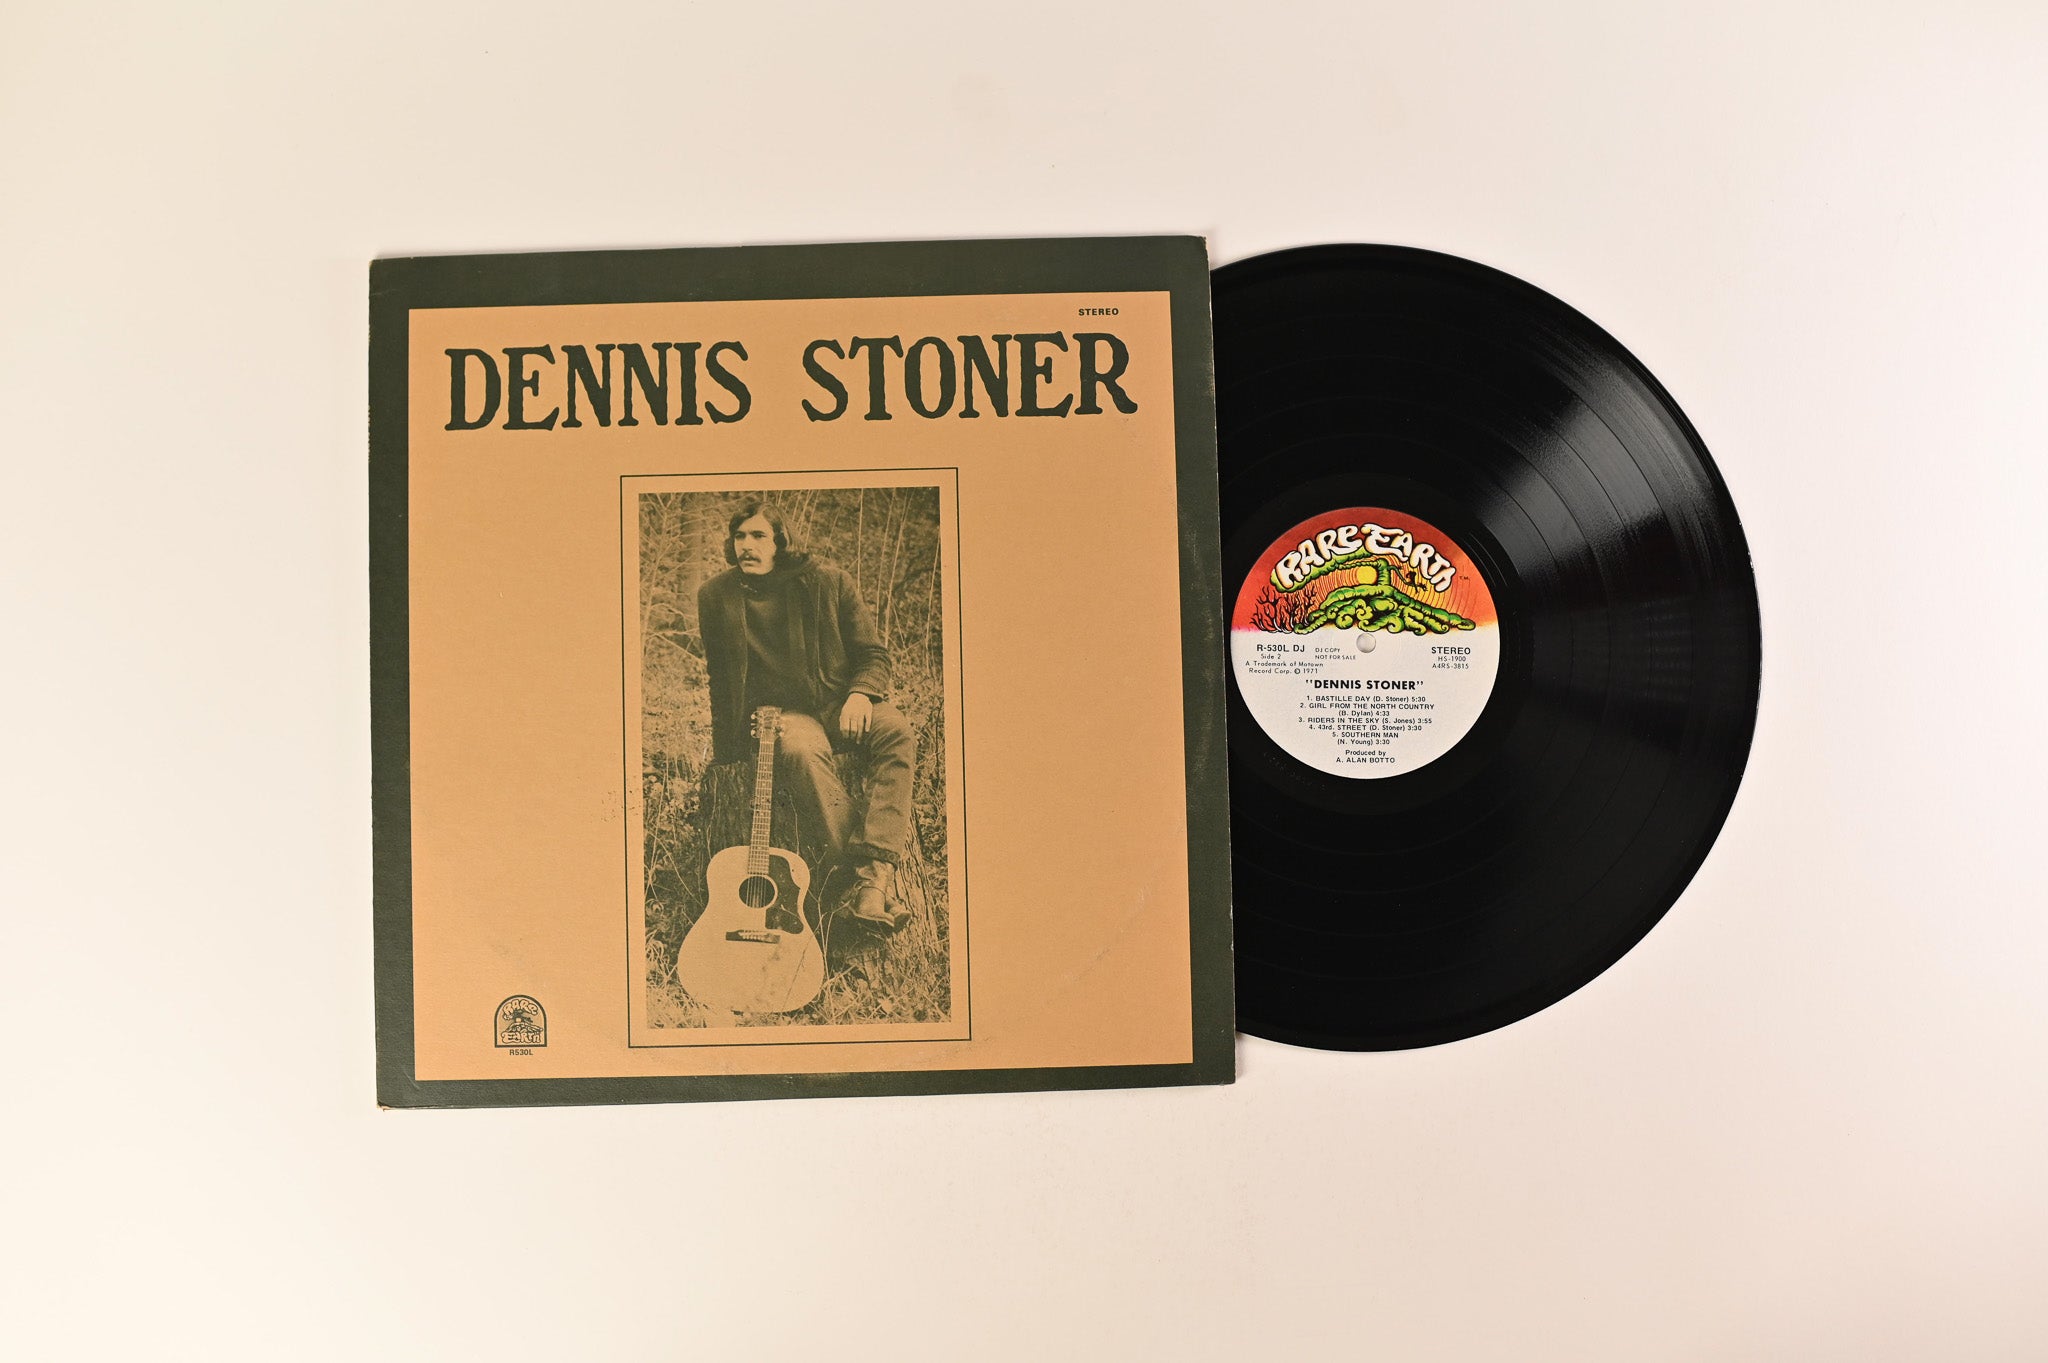 Dennis Stoner - Dennis Stoner on Rare Earth Promo